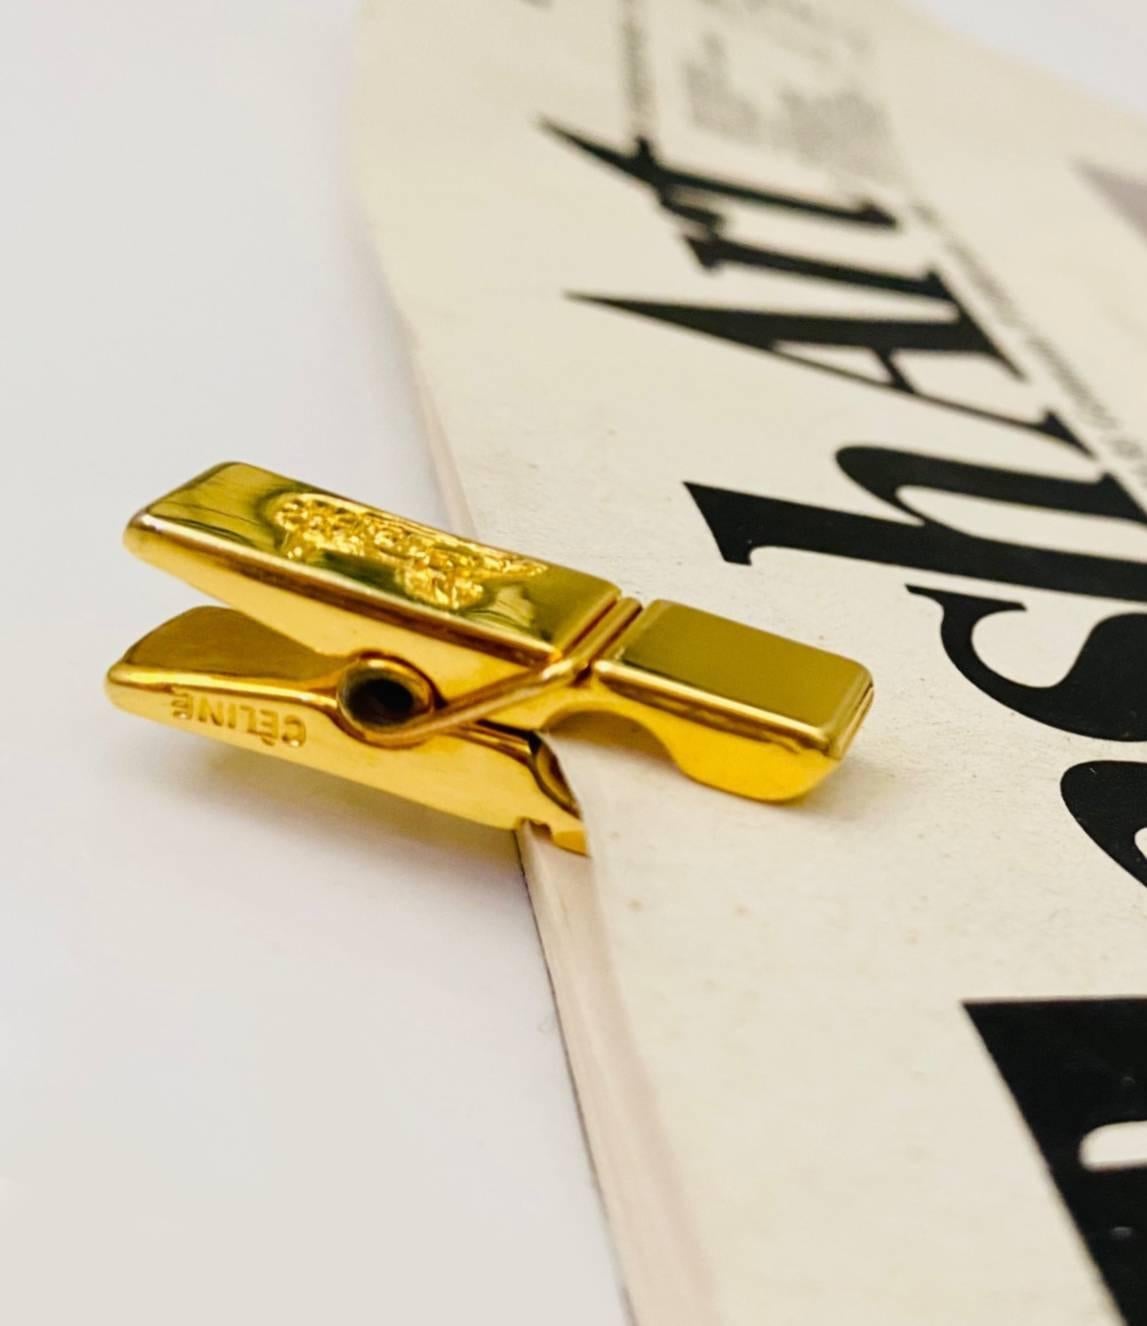 CELINE Krawattennadel Büroklammer/Lesezeichen aus goldfarbenem Metall mit CELINE auf beiden Seiten der Klammer. 

Zustand: Vintage, 1990er Jahre, ausgezeichnet 

Abmessungen: 3 cm x 1 cm